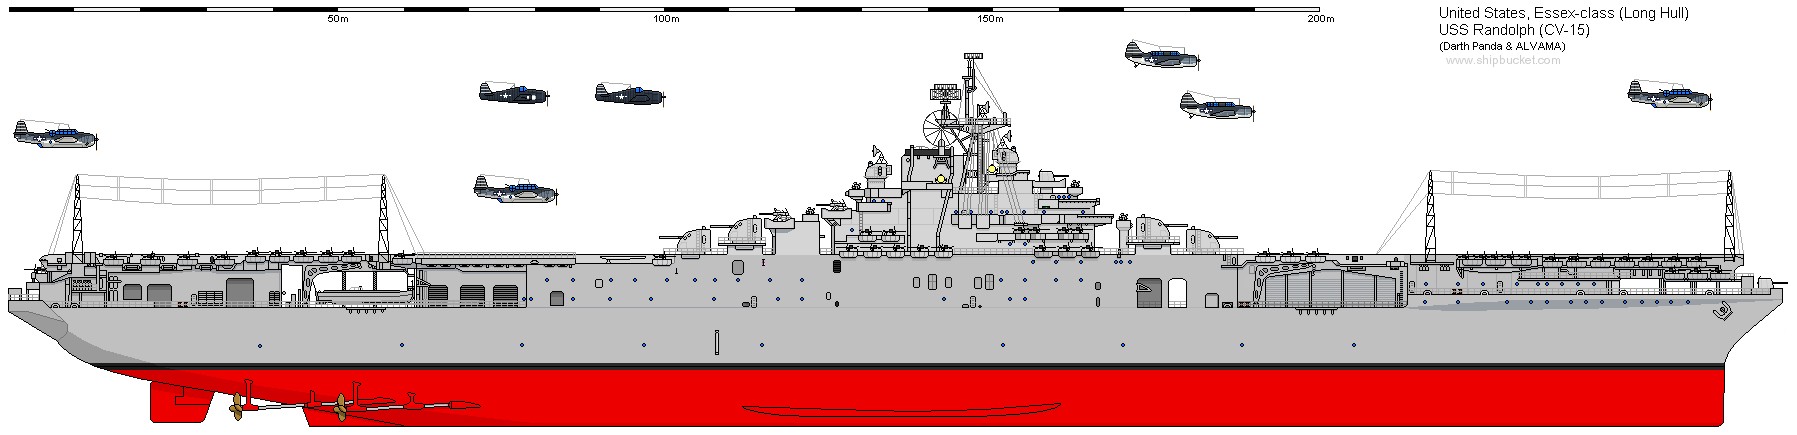 essex class aircraft carrier us navy cva cvs 05 drawing